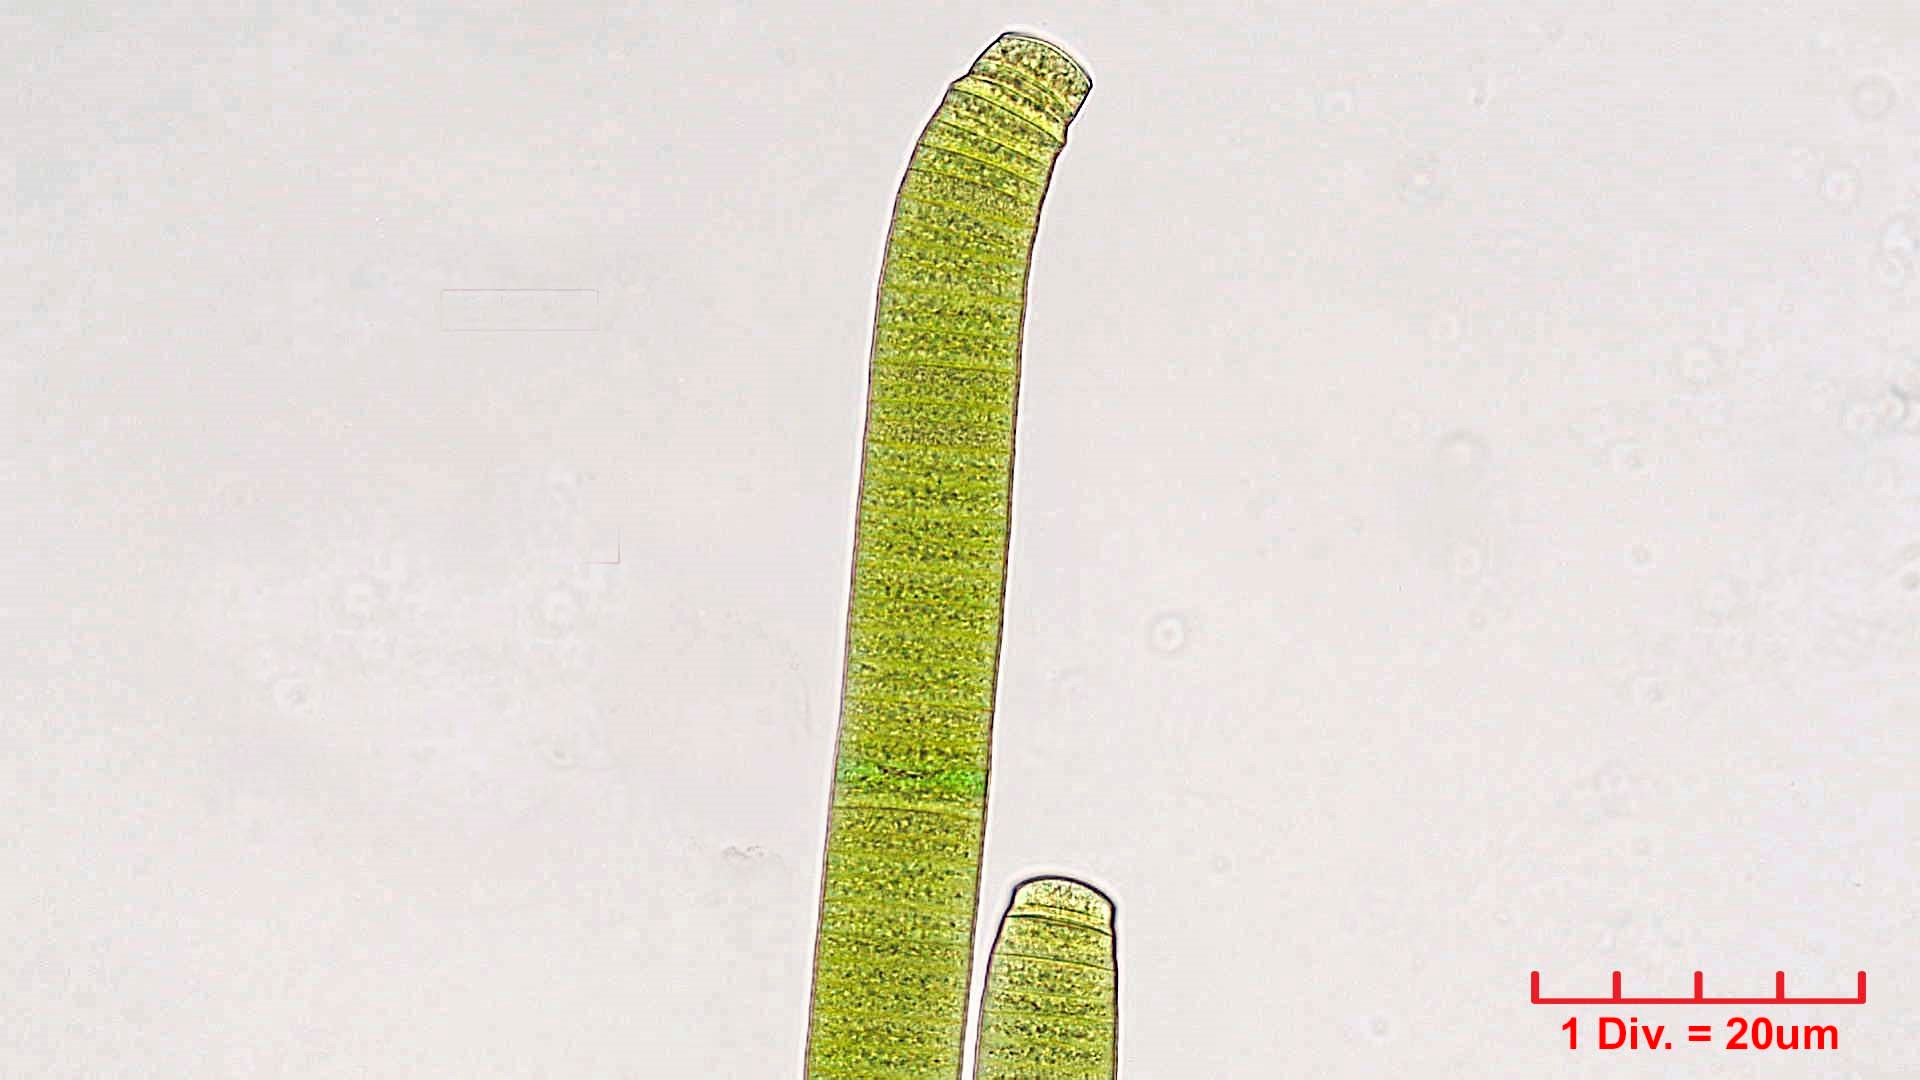 ././././Cyanobacteria/Oscillatoriales/Oscillatoriaceae/Oscillatoria/princeps/oscillatoria-princeps-167.jpg